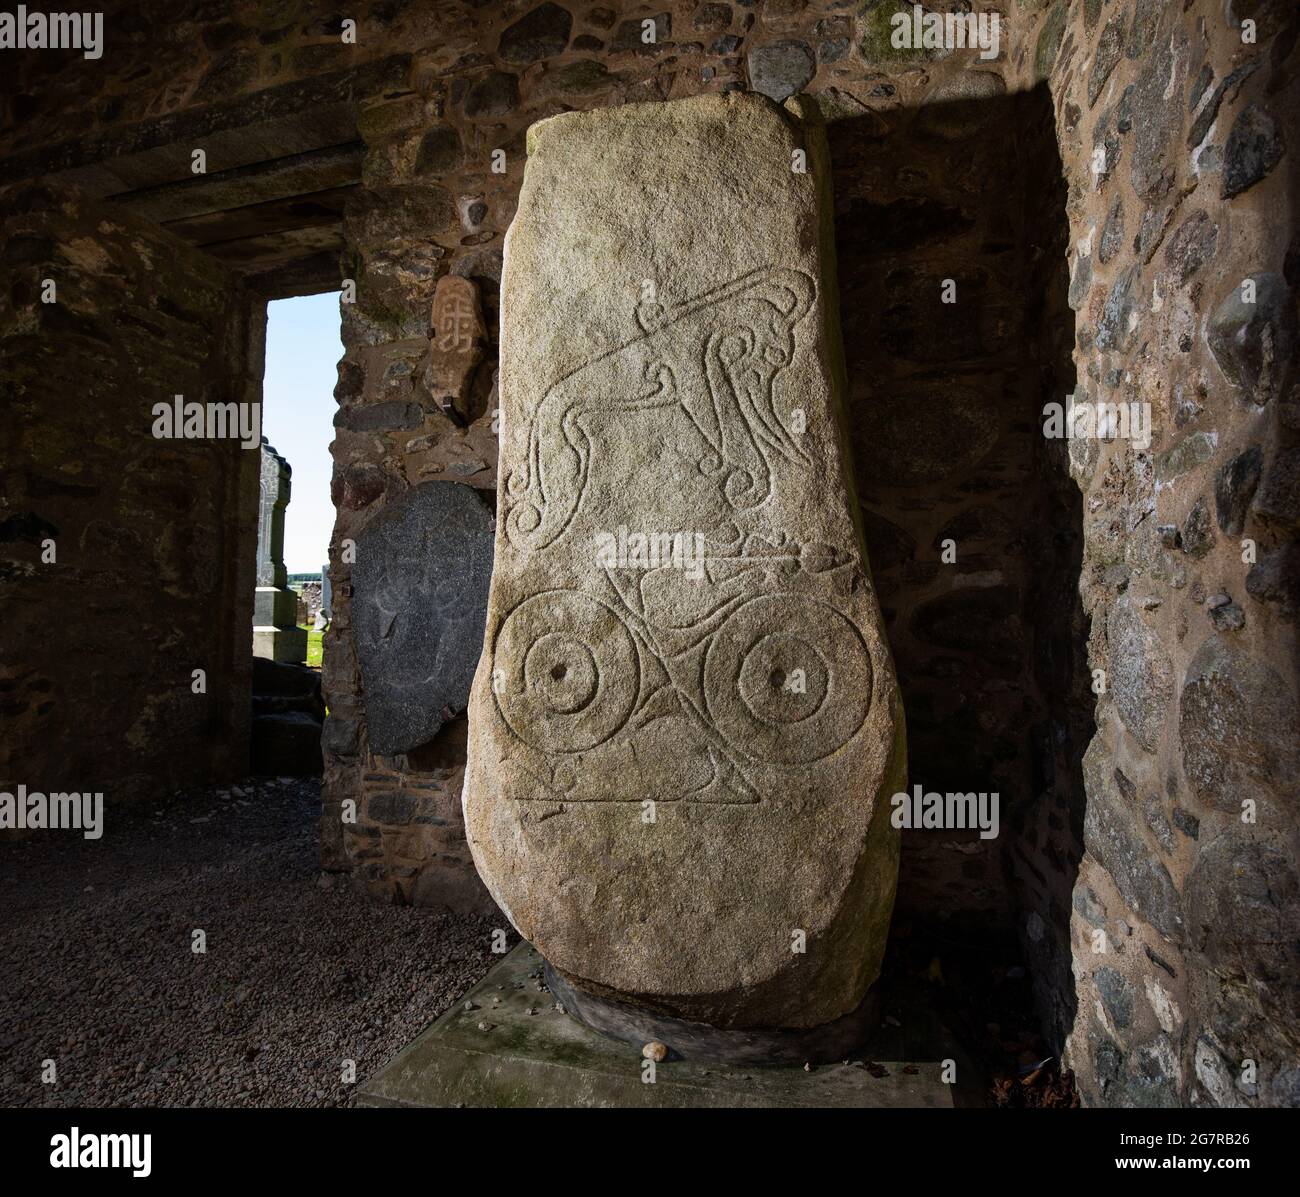 Dyce símbolo de piedra conocida como Dyce I, una de las dos piedras pictish tallada situado en las ruinas de la Capilla de San Fergus kirk en Dyce, Aberdeen, Escocia Foto de stock